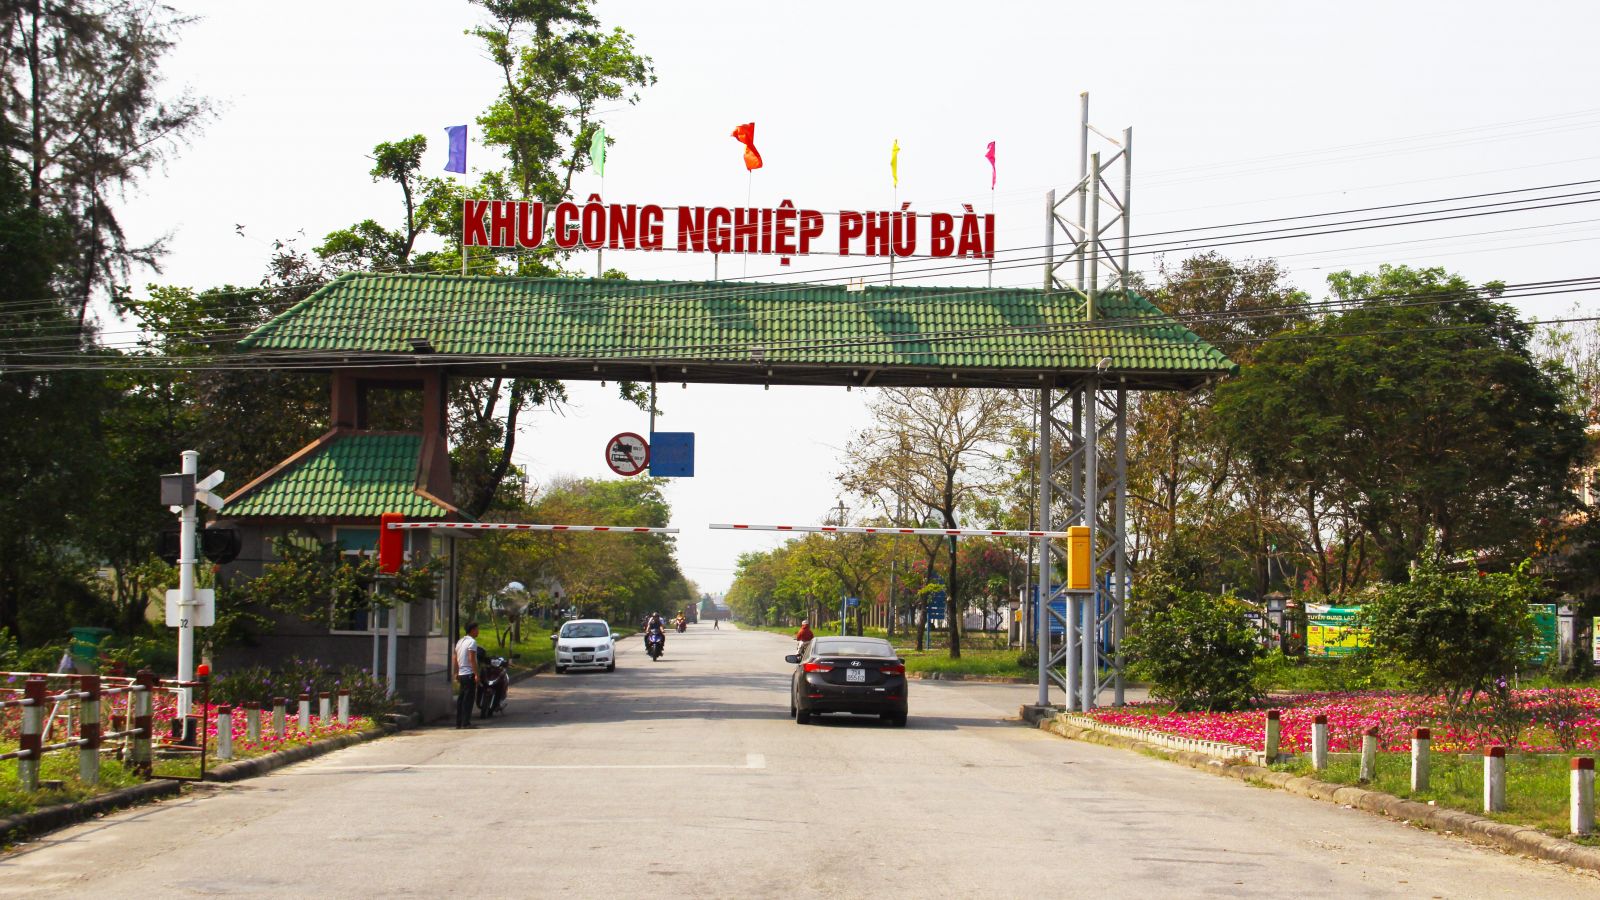 Khu công nghiệp Phú Bài: Điểm nhấn phát triển Khu công nghiệp hoàn chỉnh của tỉnh Thừa Thiên Huế